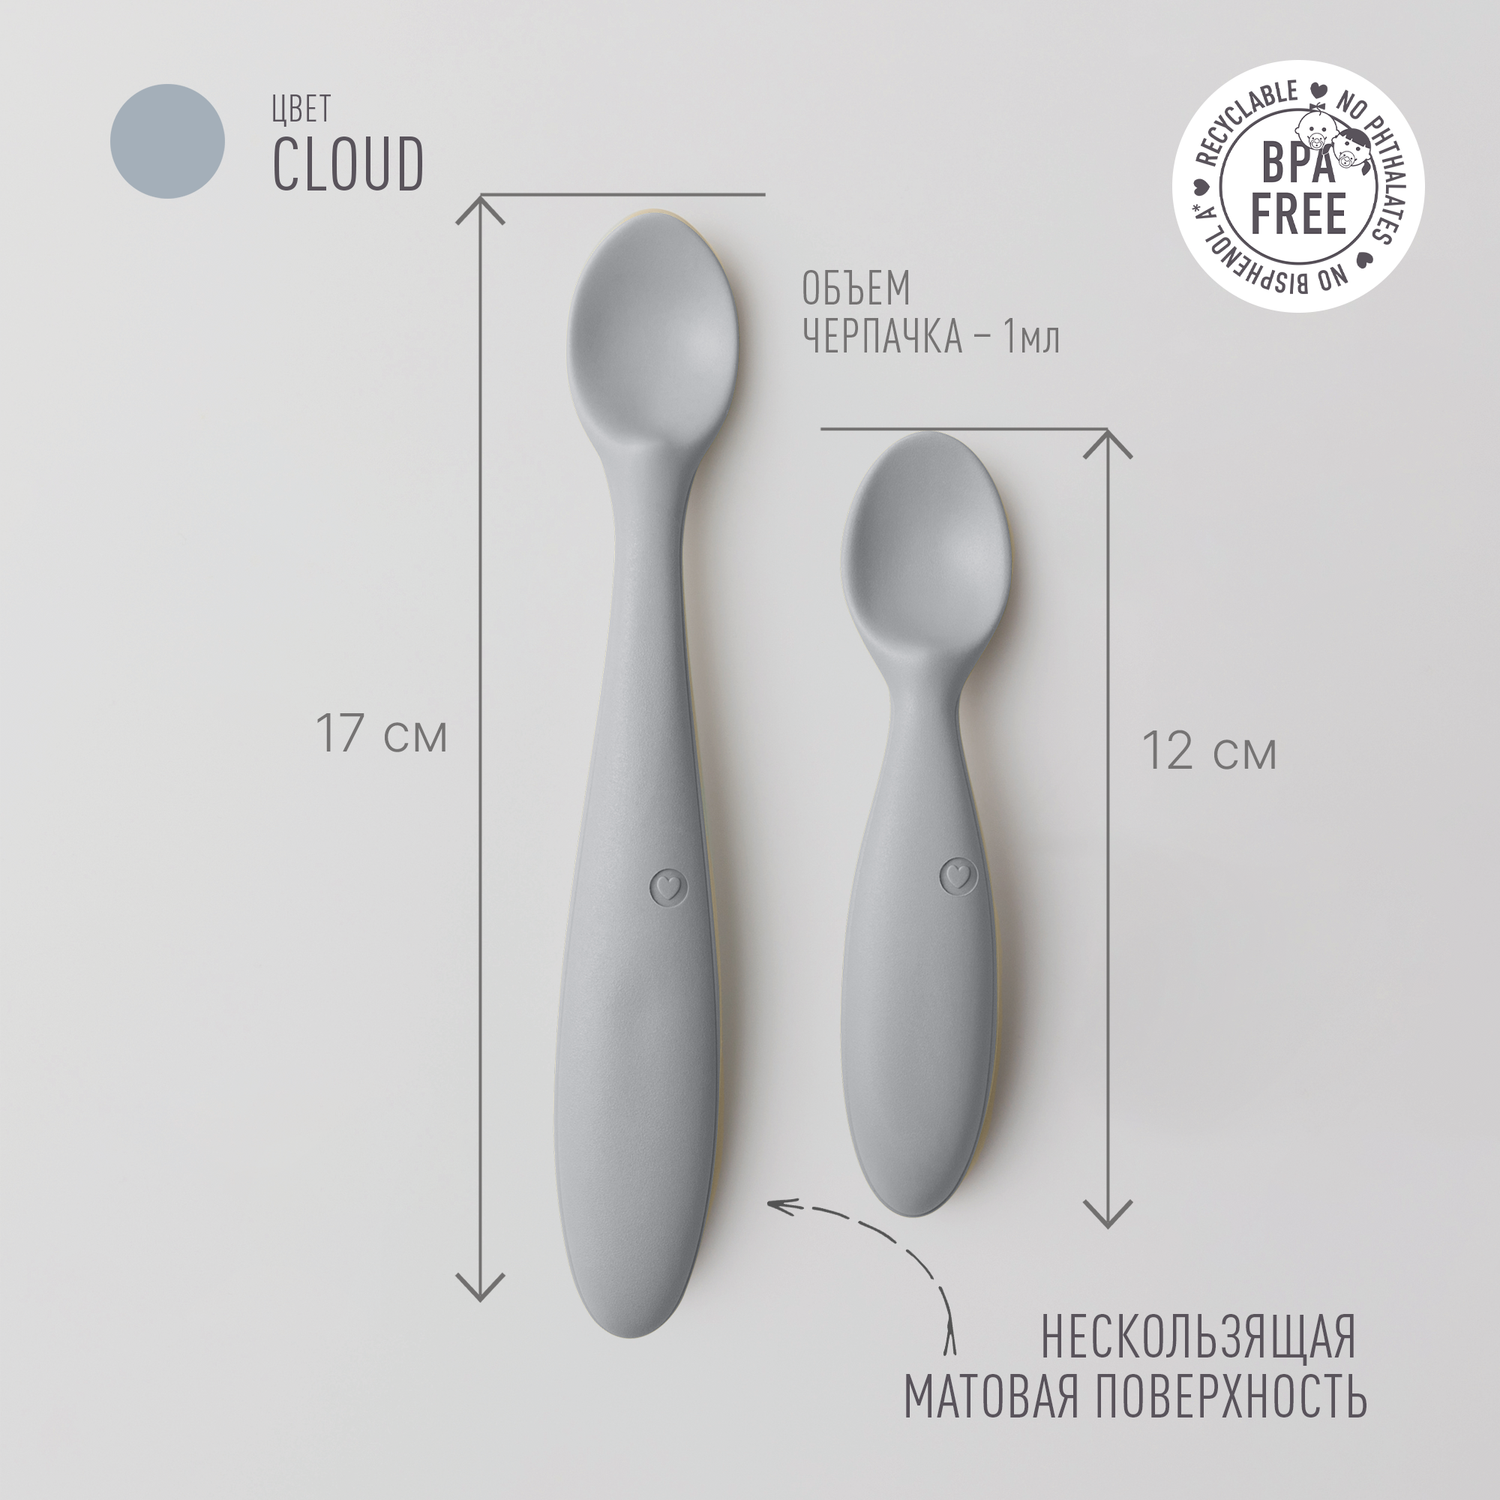 Набор ложек BIBS Spoon Set Cloud - фото 2